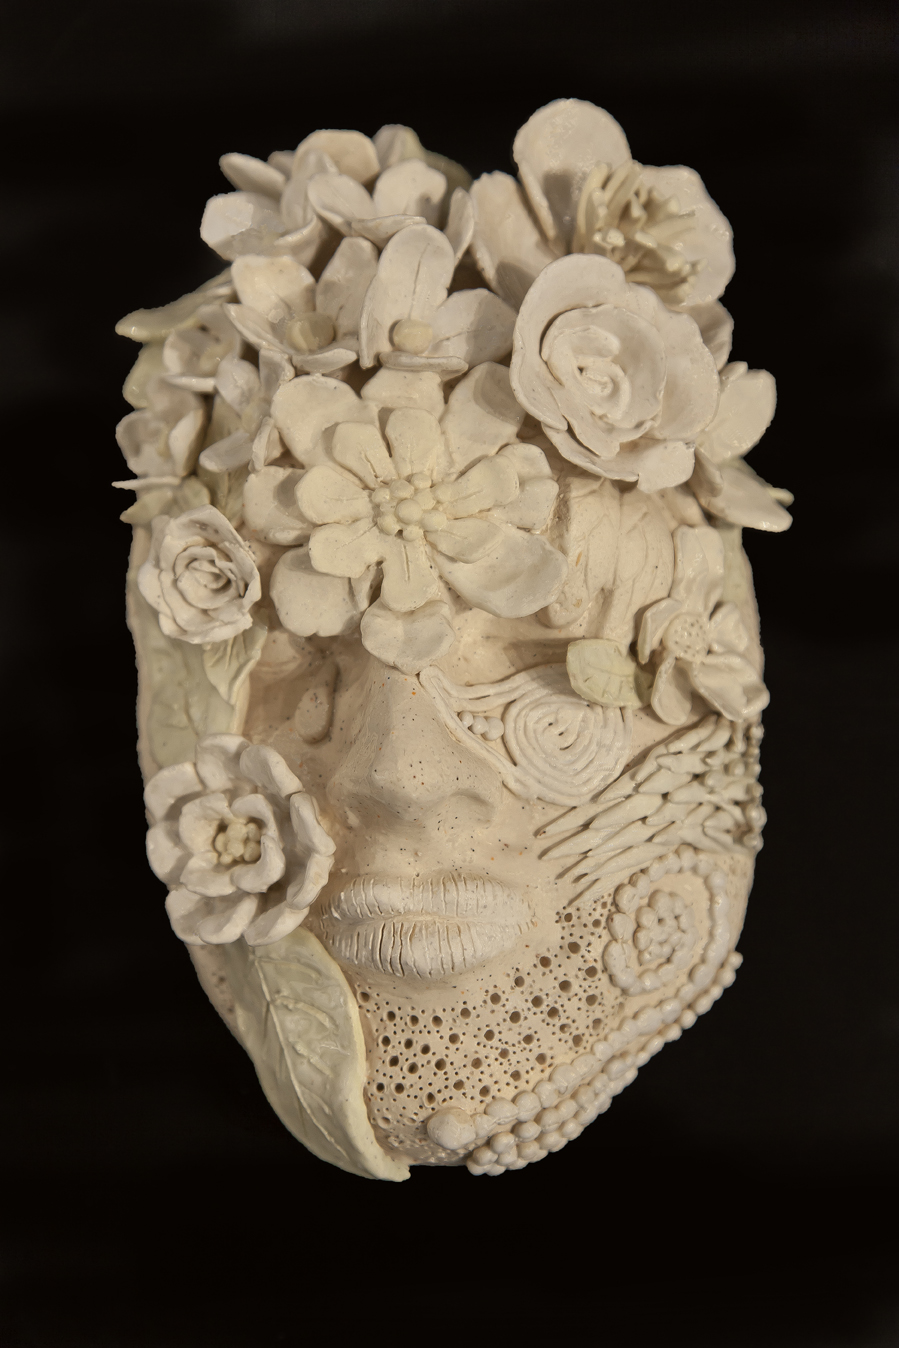 Spring Face by Rose Dobson, 2015. Medium: Ceramic